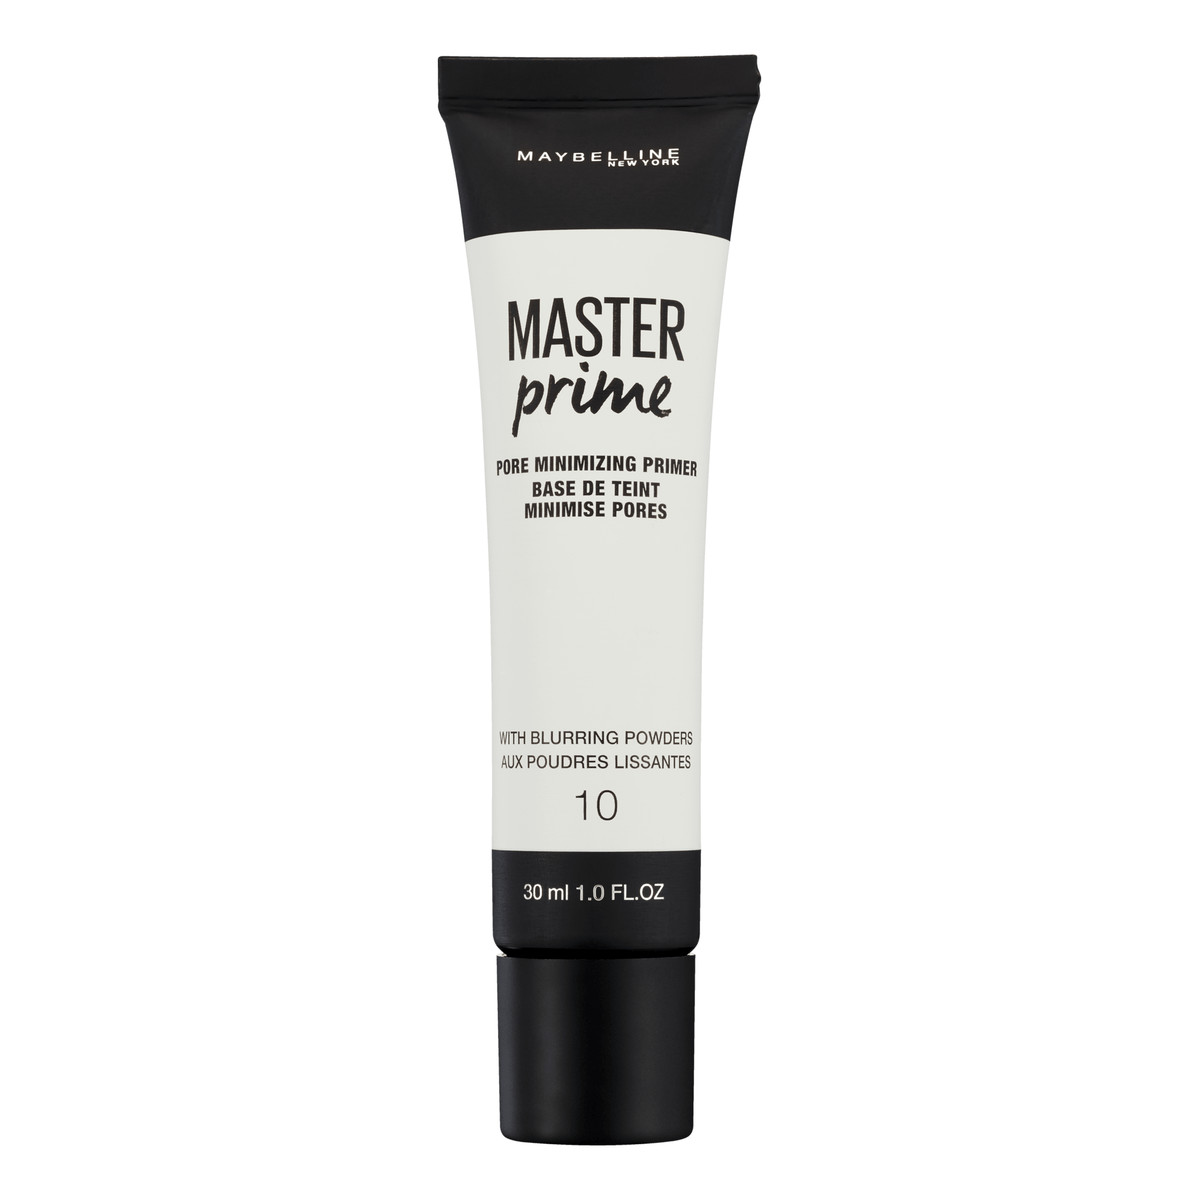 Maybelline Master Prime baza pod podkład do wygładzenia skóry i zmniejszenia widoczności porów 30ml